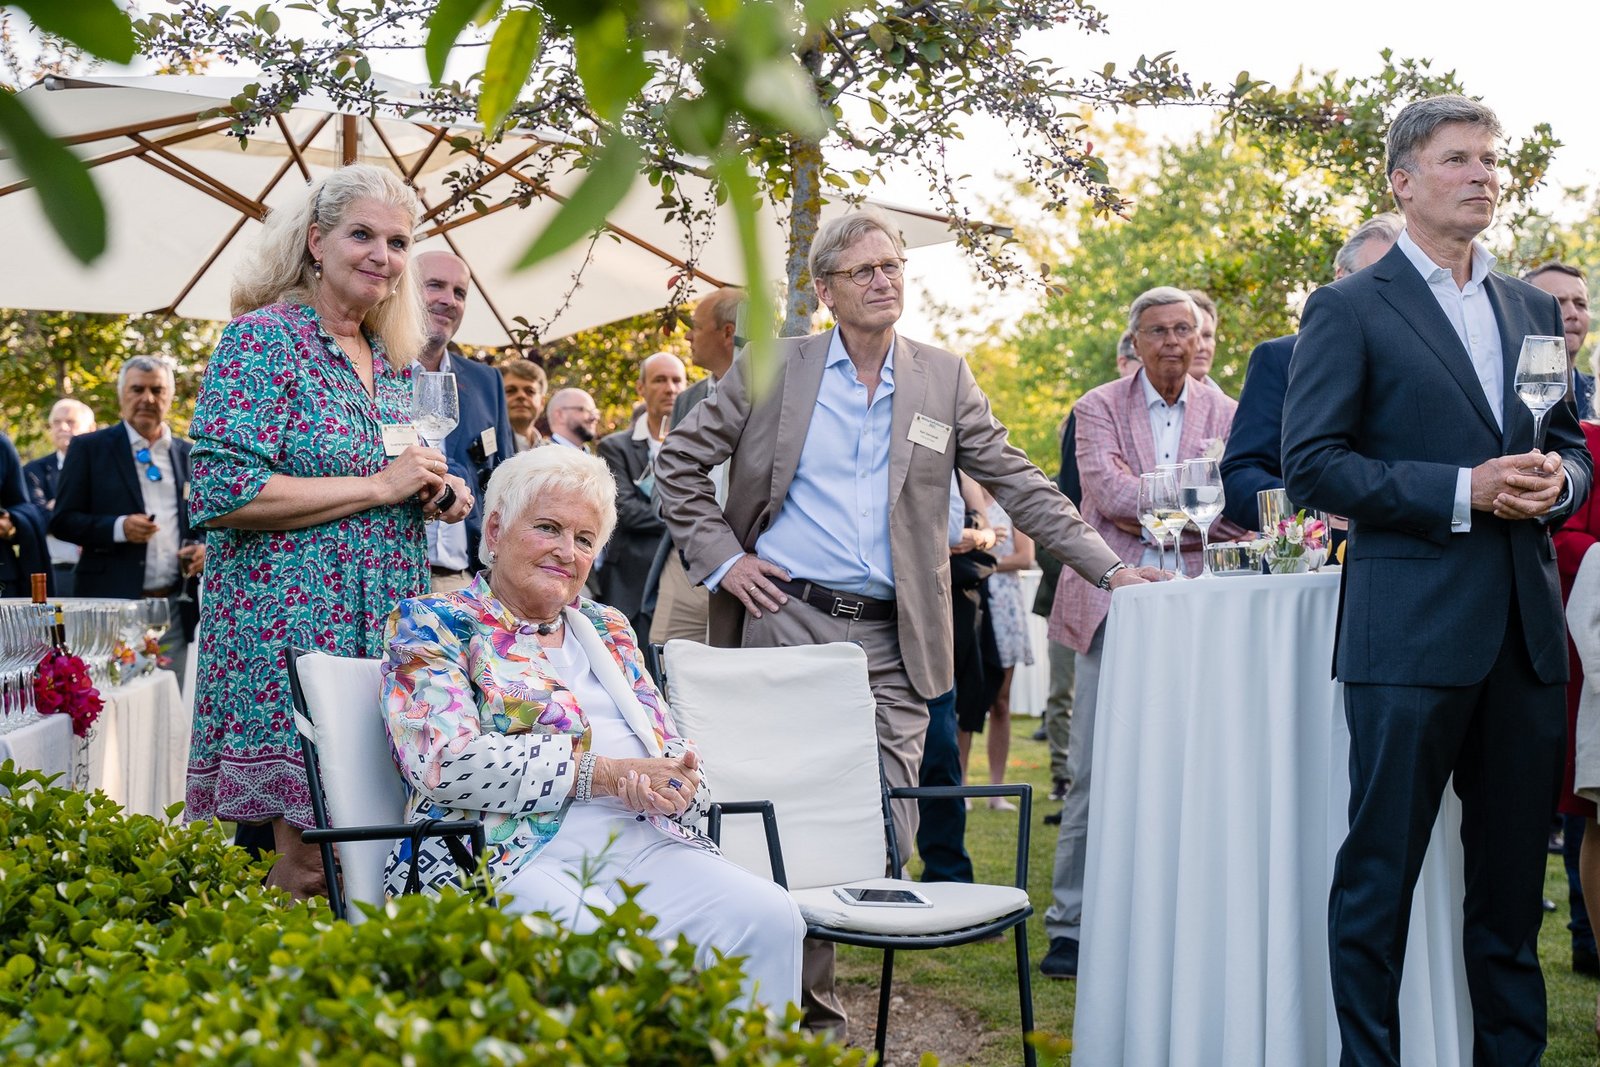 Zuschauer im Garten des Hotel Son Claret bei der Eröffnung des Wirtschaftsforums Neu Denken 2021.